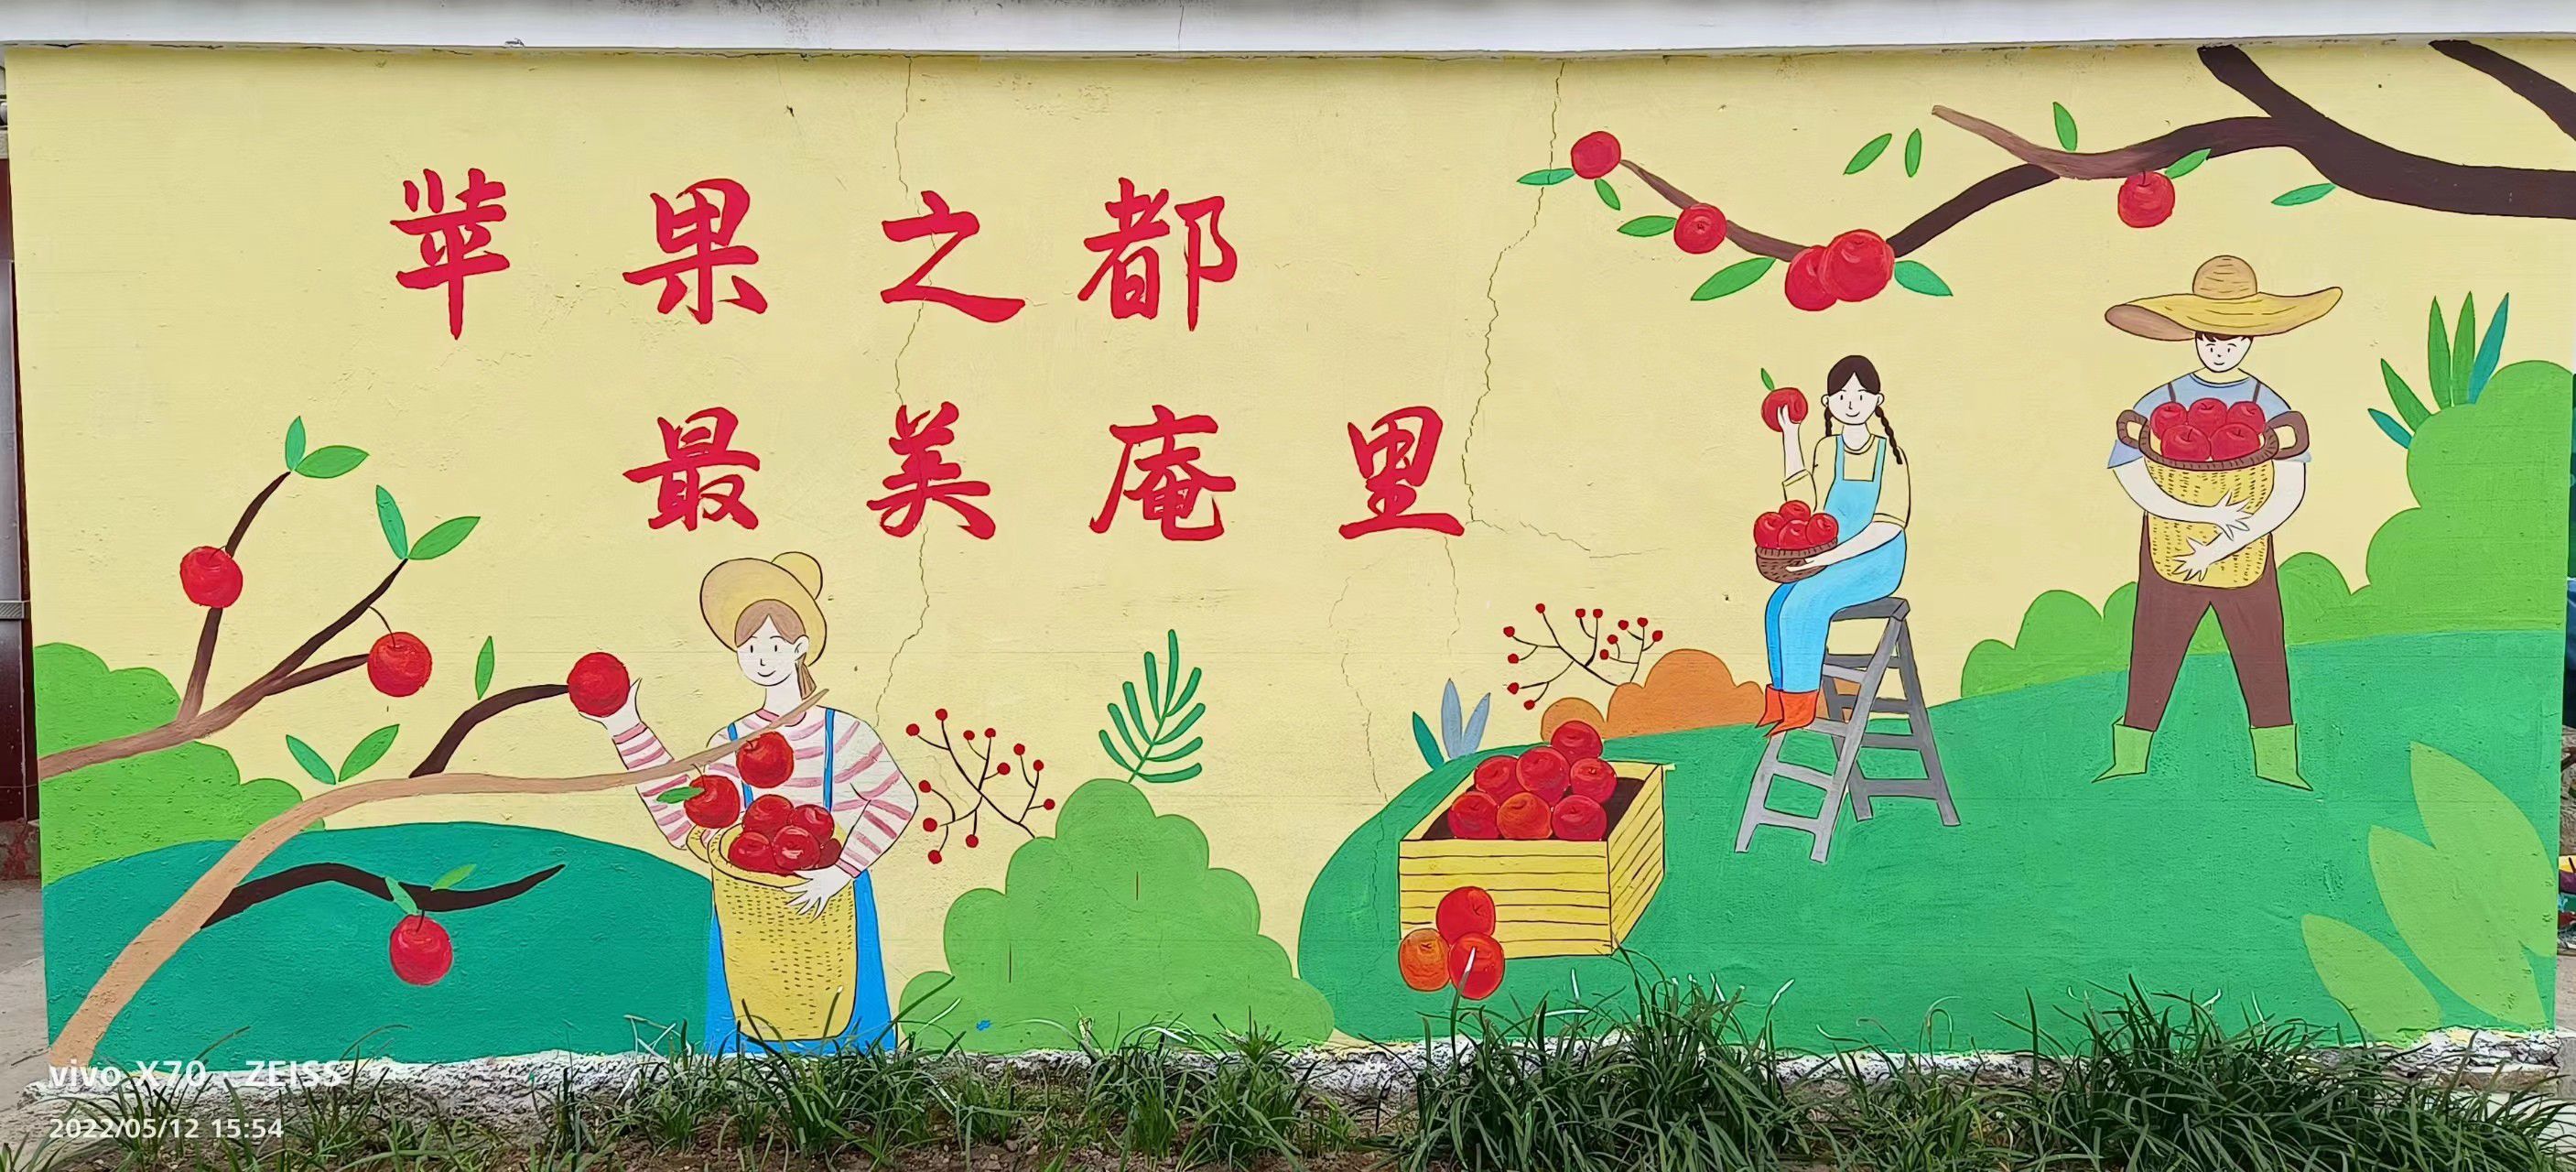 郑州墙体彩绘